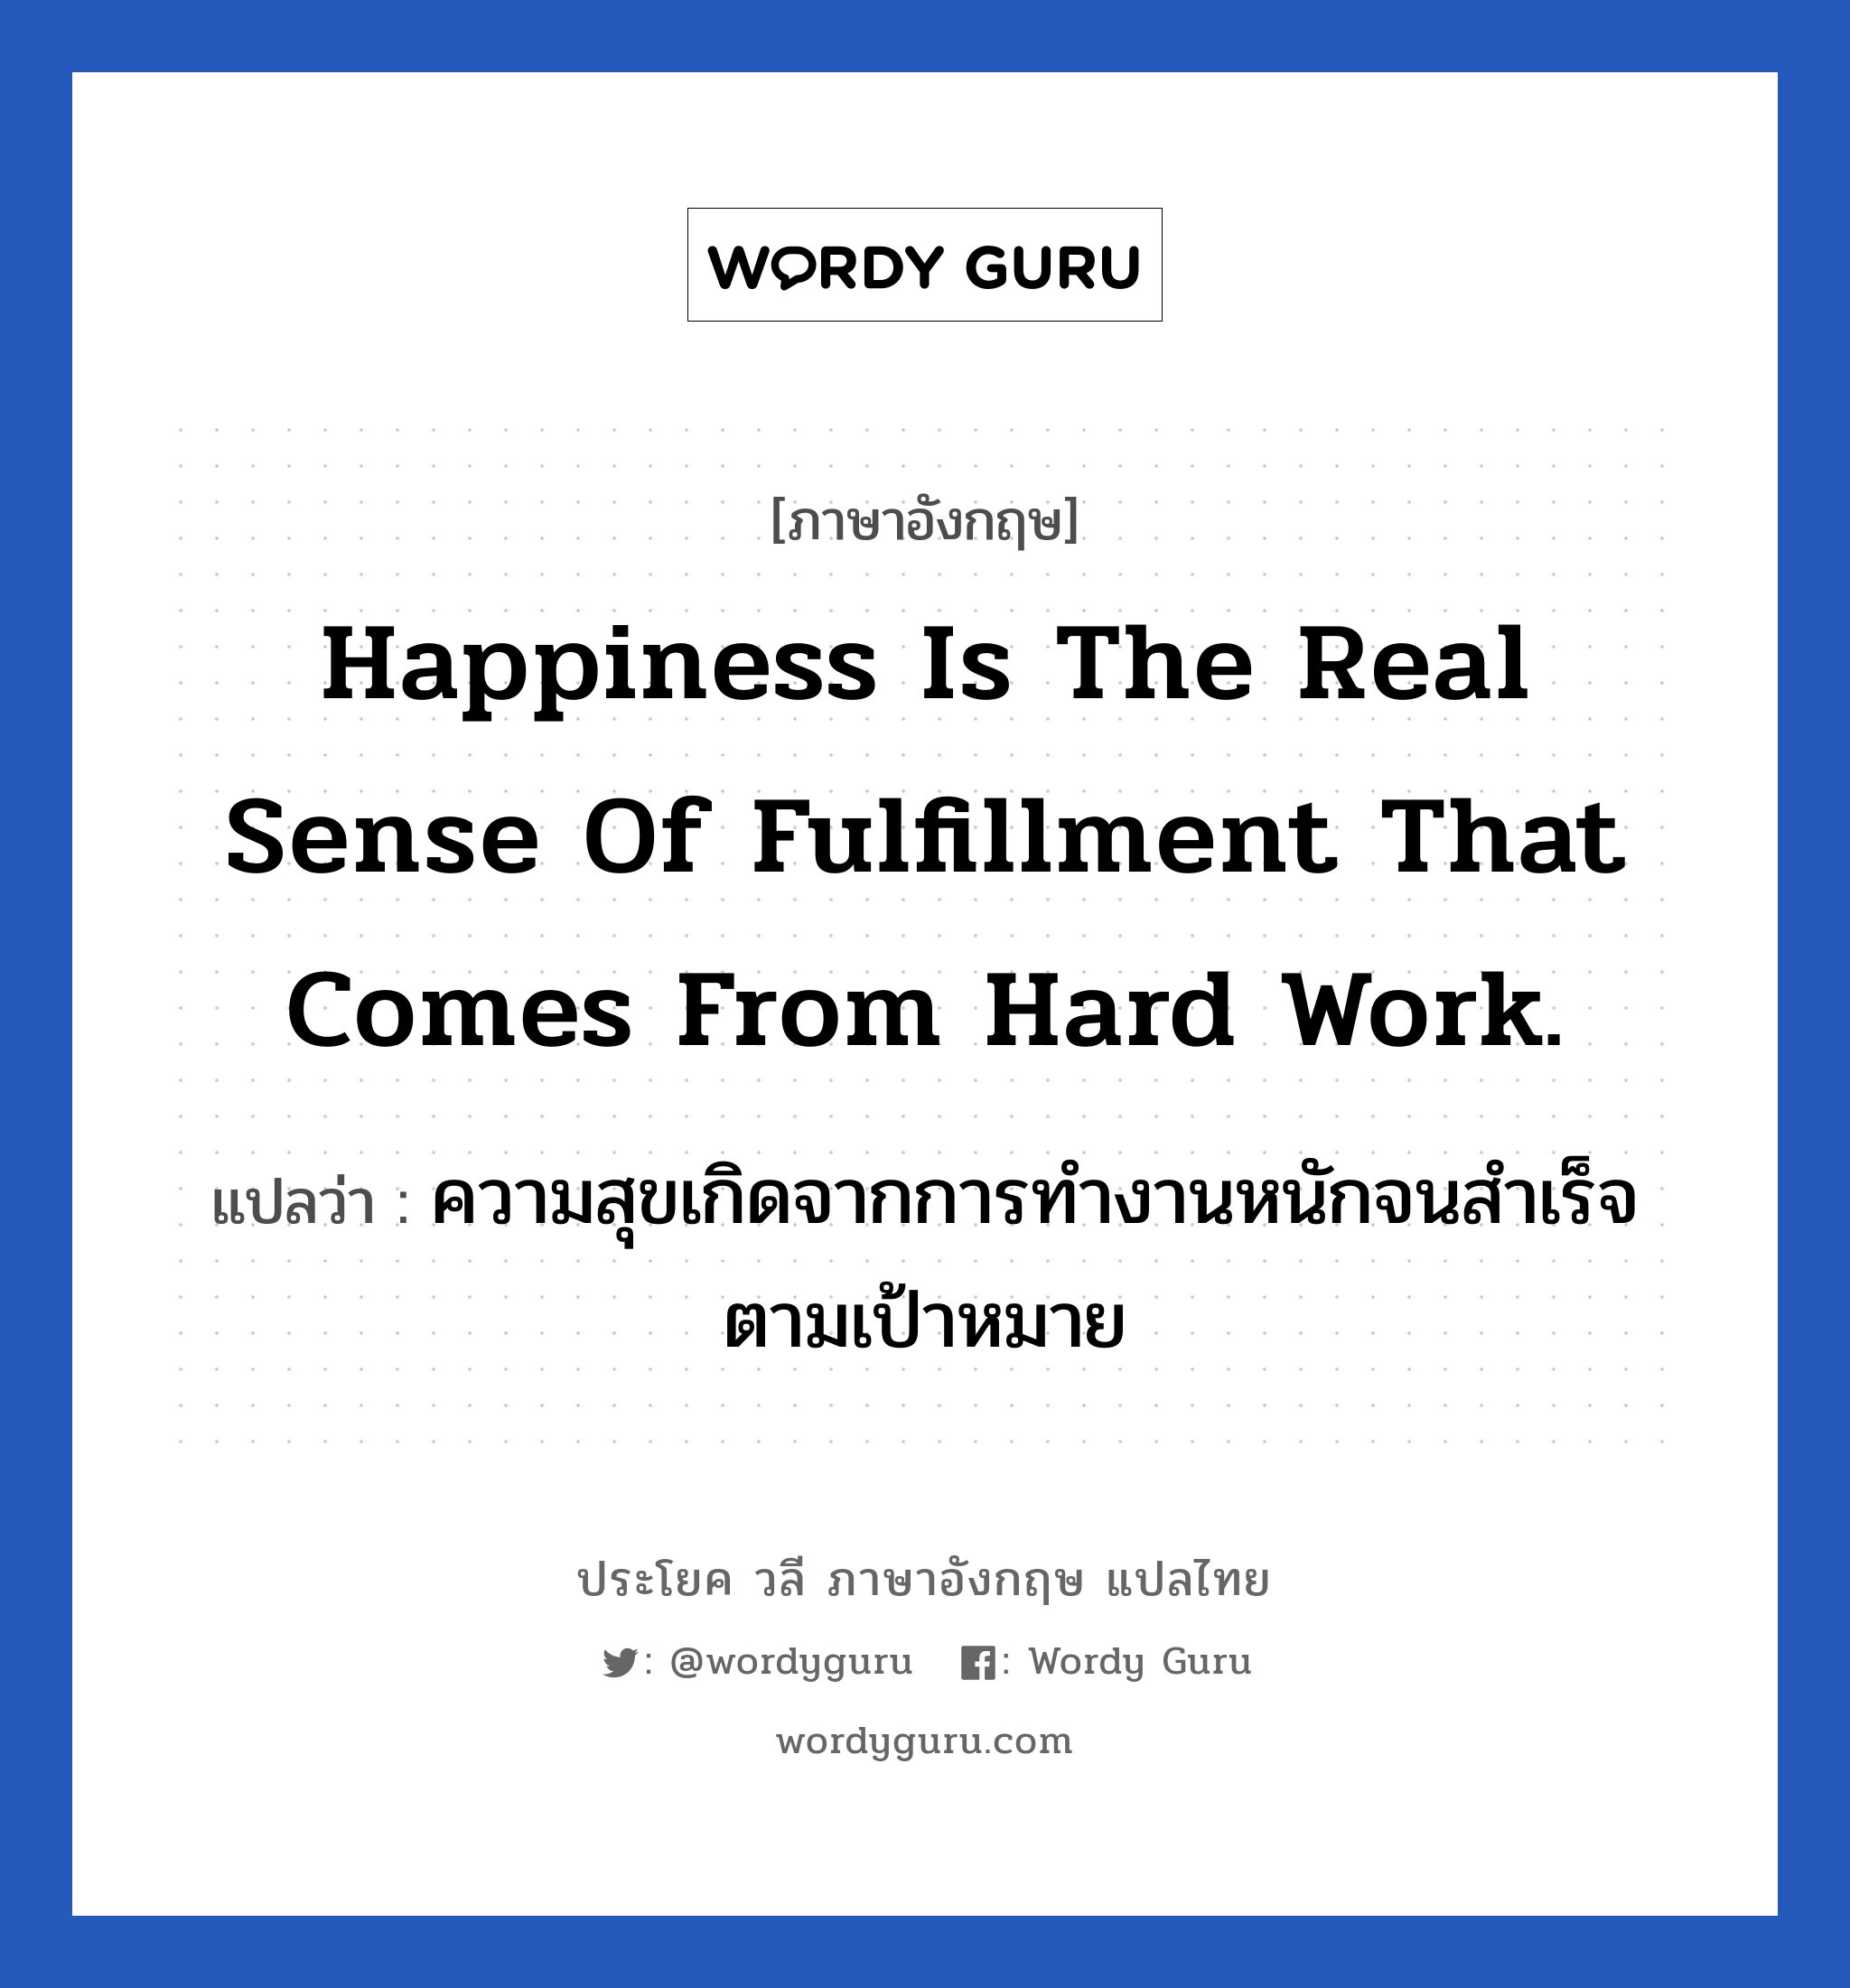 ความสุขเกิดจากการทำงานหนักจนสำเร็จตามเป้าหมาย ภาษาอังกฤษ?, วลีภาษาอังกฤษ ความสุขเกิดจากการทำงานหนักจนสำเร็จตามเป้าหมาย แปลว่า Happiness is the real sense of fulfillment that comes from hard work. หมวด ในที่ทำงาน